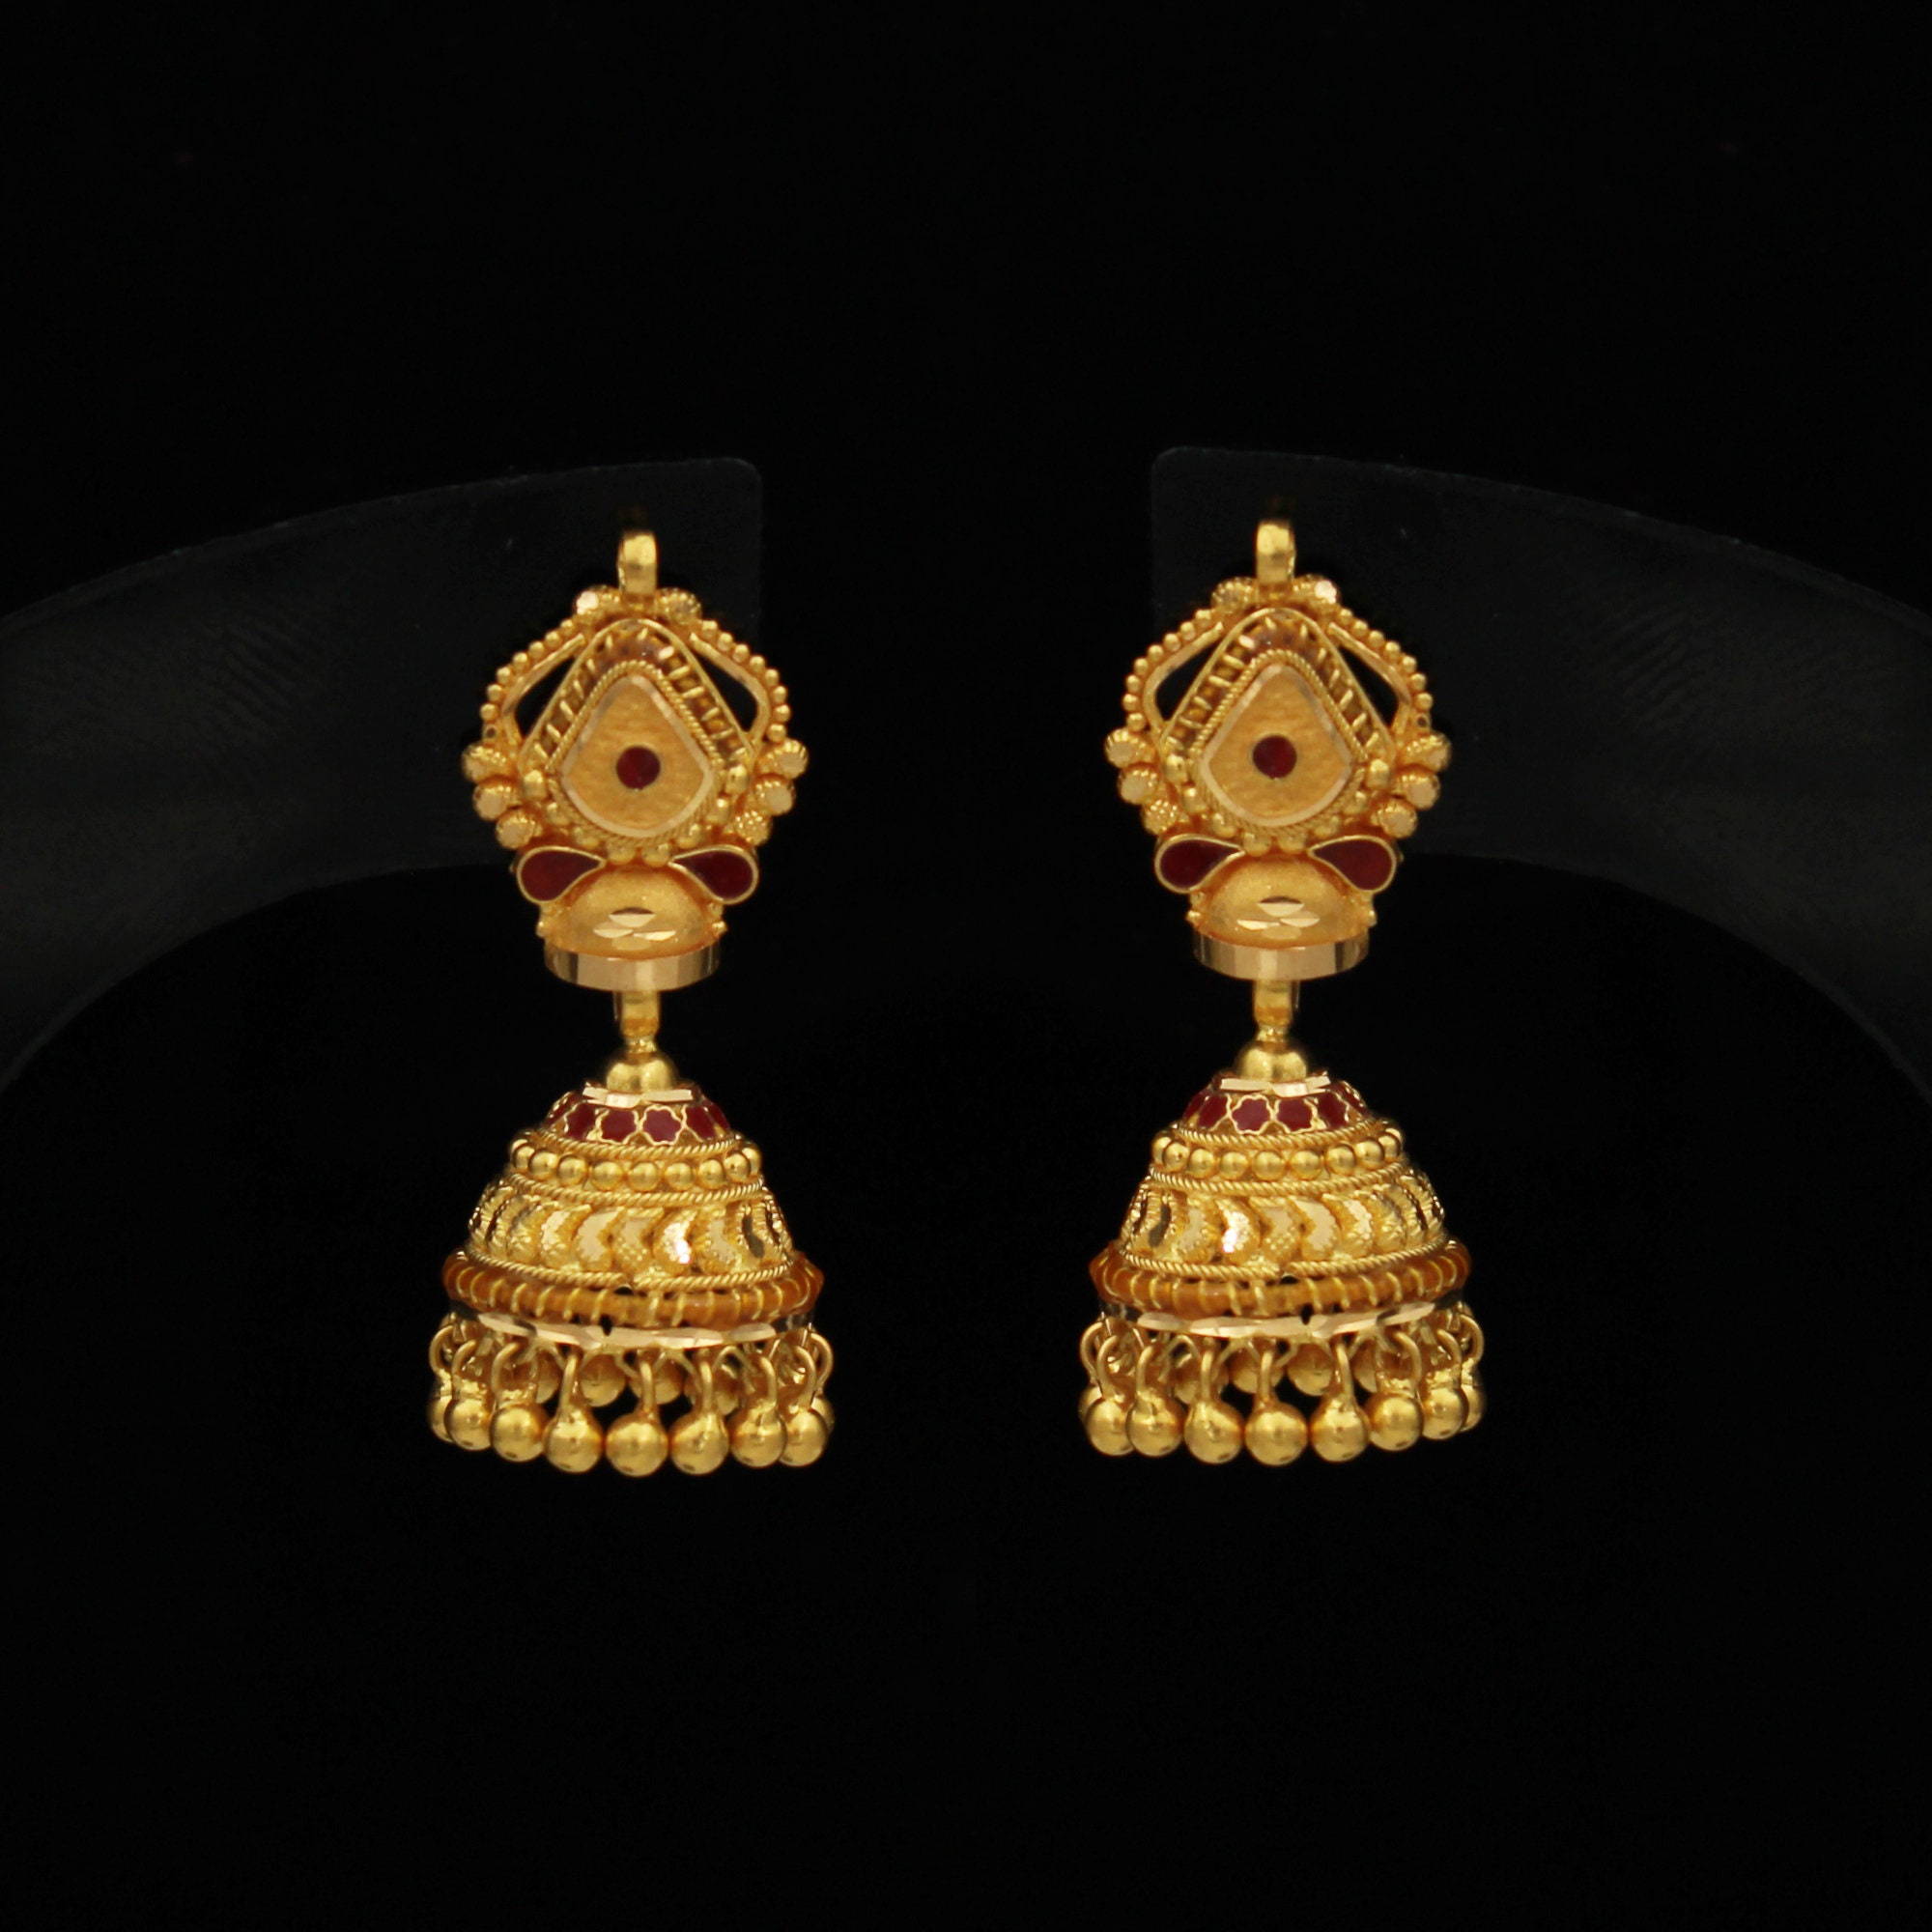 22k Yellow Gold Jhumka Earrings , Handmade Vintage Pure Traditional Wedding  Design Indian Style WEDDING Dangle Jhumki Earrings Chandelier - Etsy